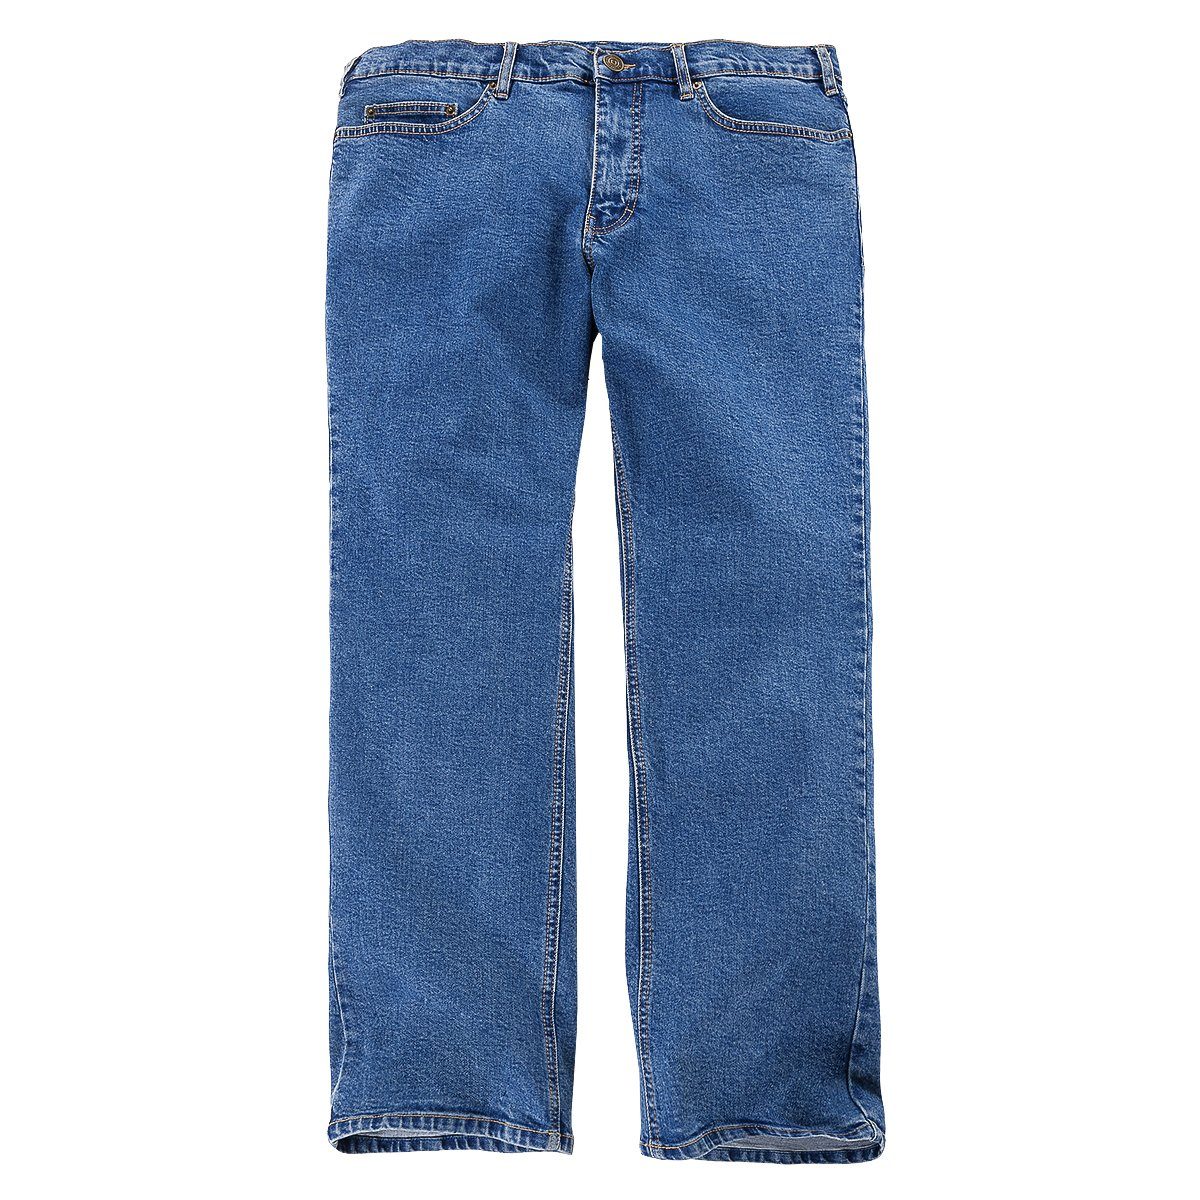 Paddock's Stretch-Jeans Übergrößen Paddock´s Stretch-Jeans blue stonewashed